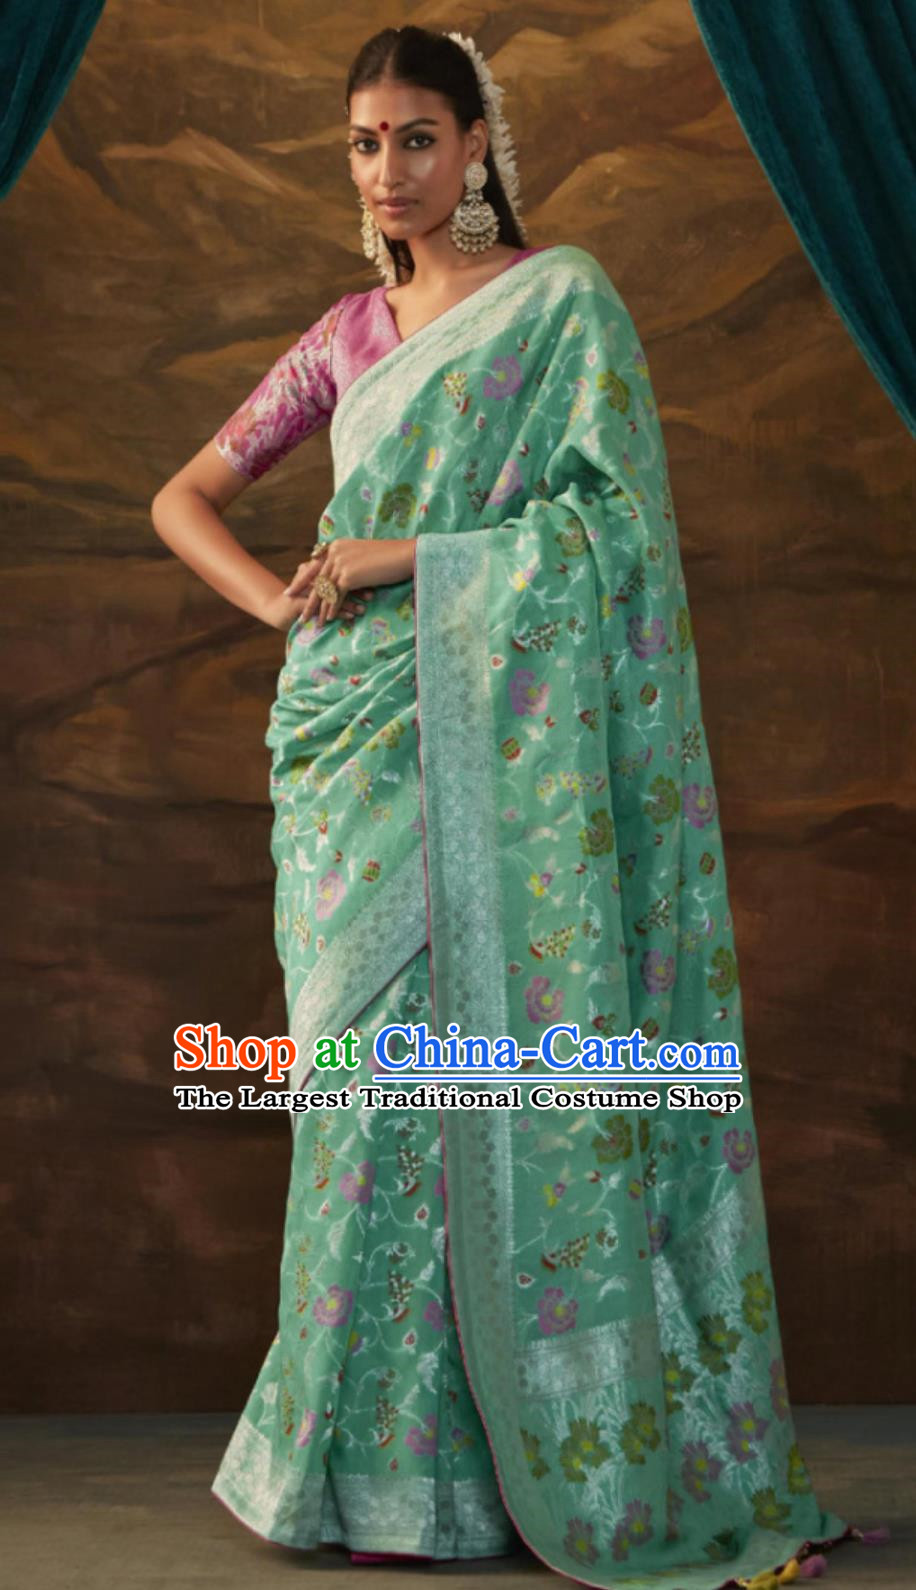 Sea Green Indian Saree National Women Wrap Skirt Sari Dress High End Silk Jacquard Clothing